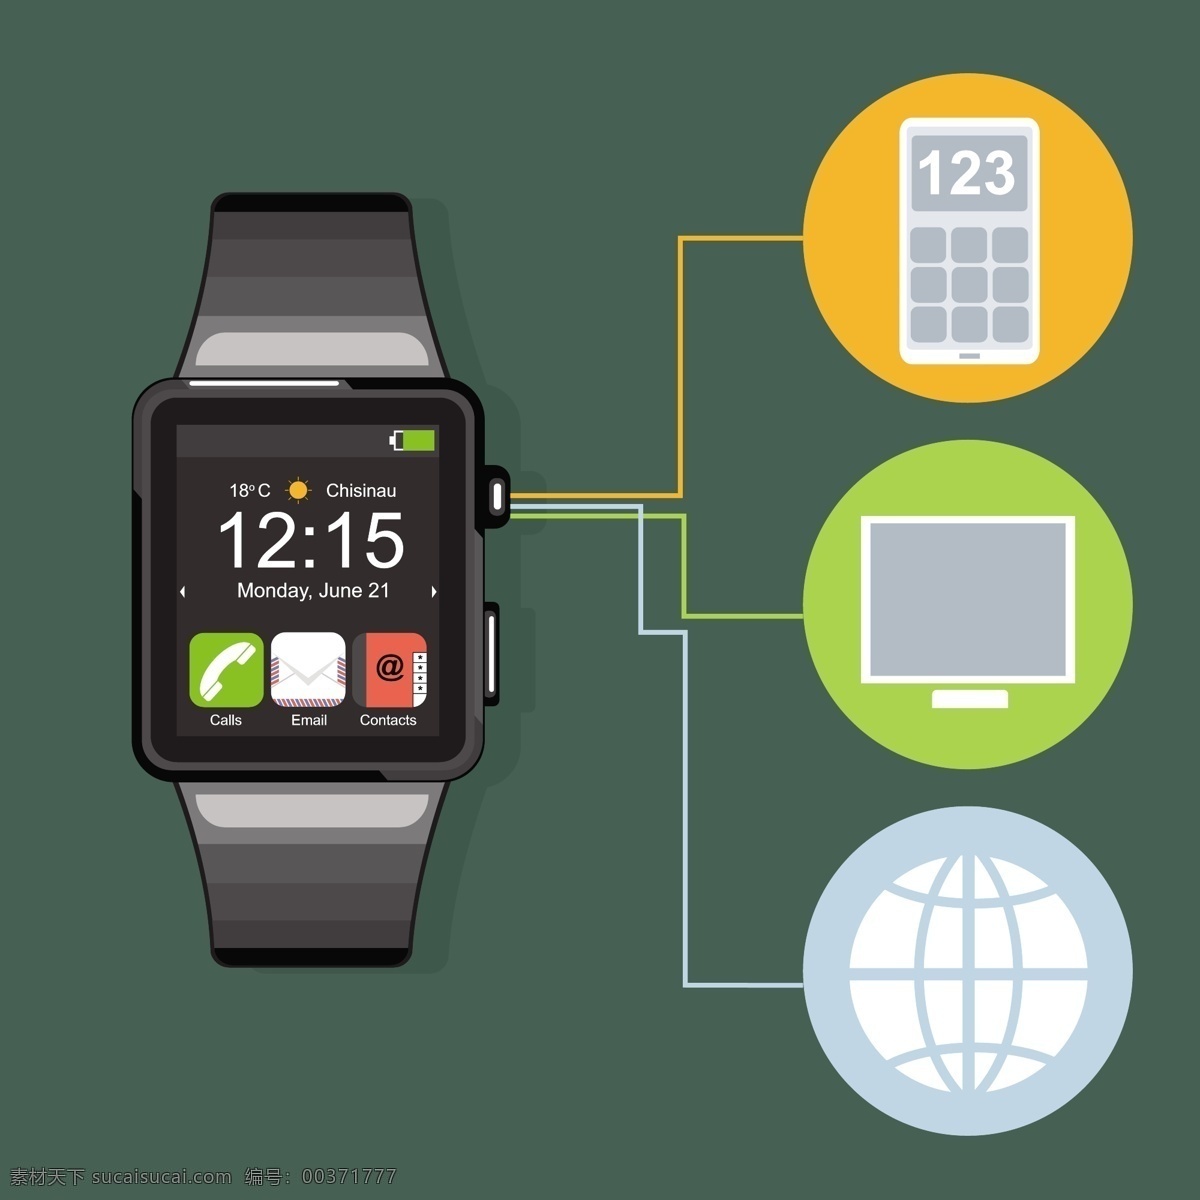 绿色 背景 智能 手表 图表 技术 电话 信息图形 时钟 时间 互联网 苹果 智能手机 电子邮件 应用 现代 屏幕 触摸 小工具 设备